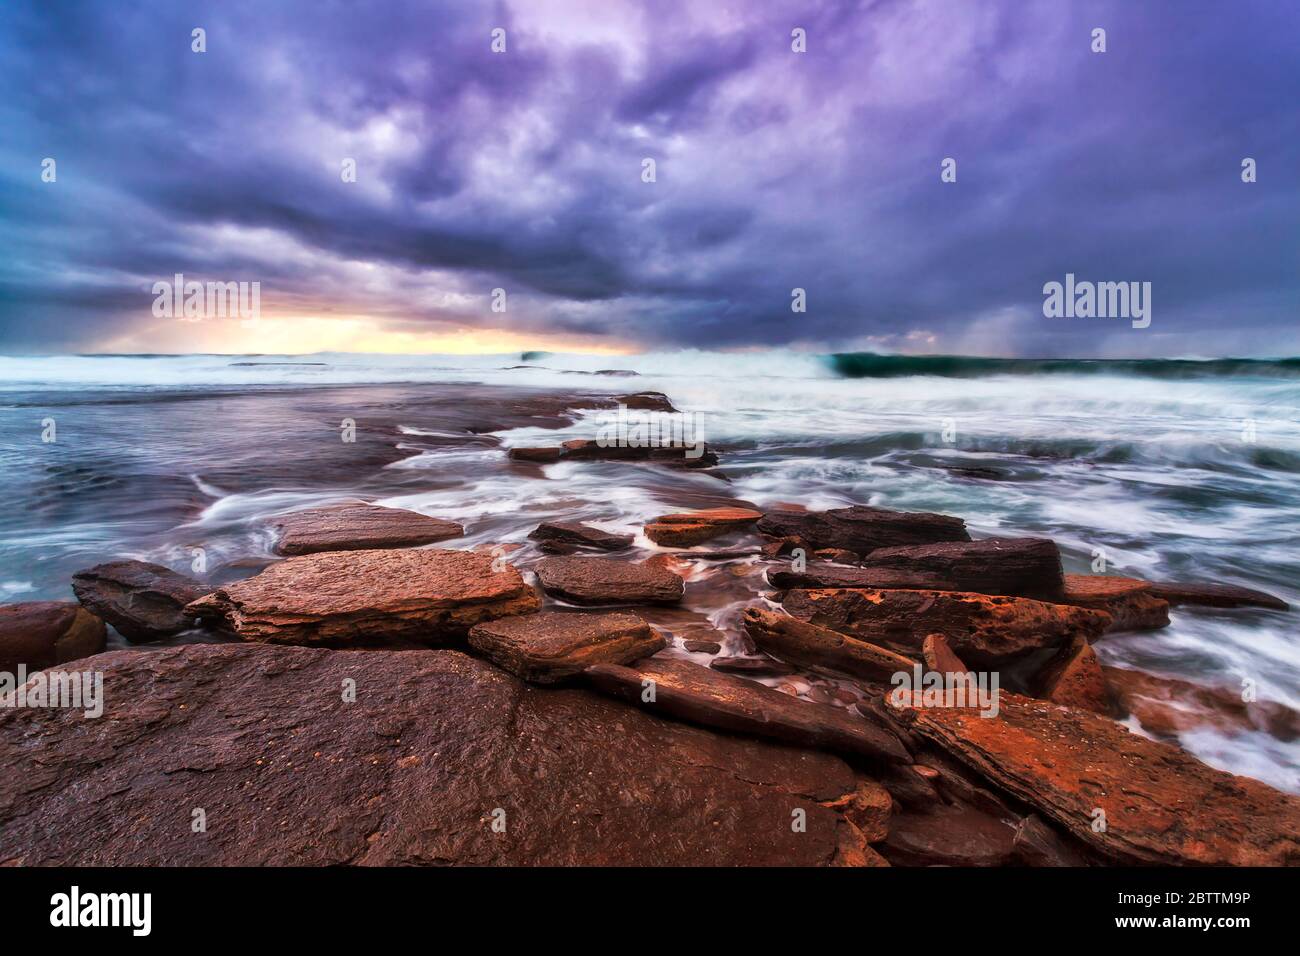 Rocas de arenisca erosionadas planas de las playas del norte de Sydney al amanecer. Foto de stock